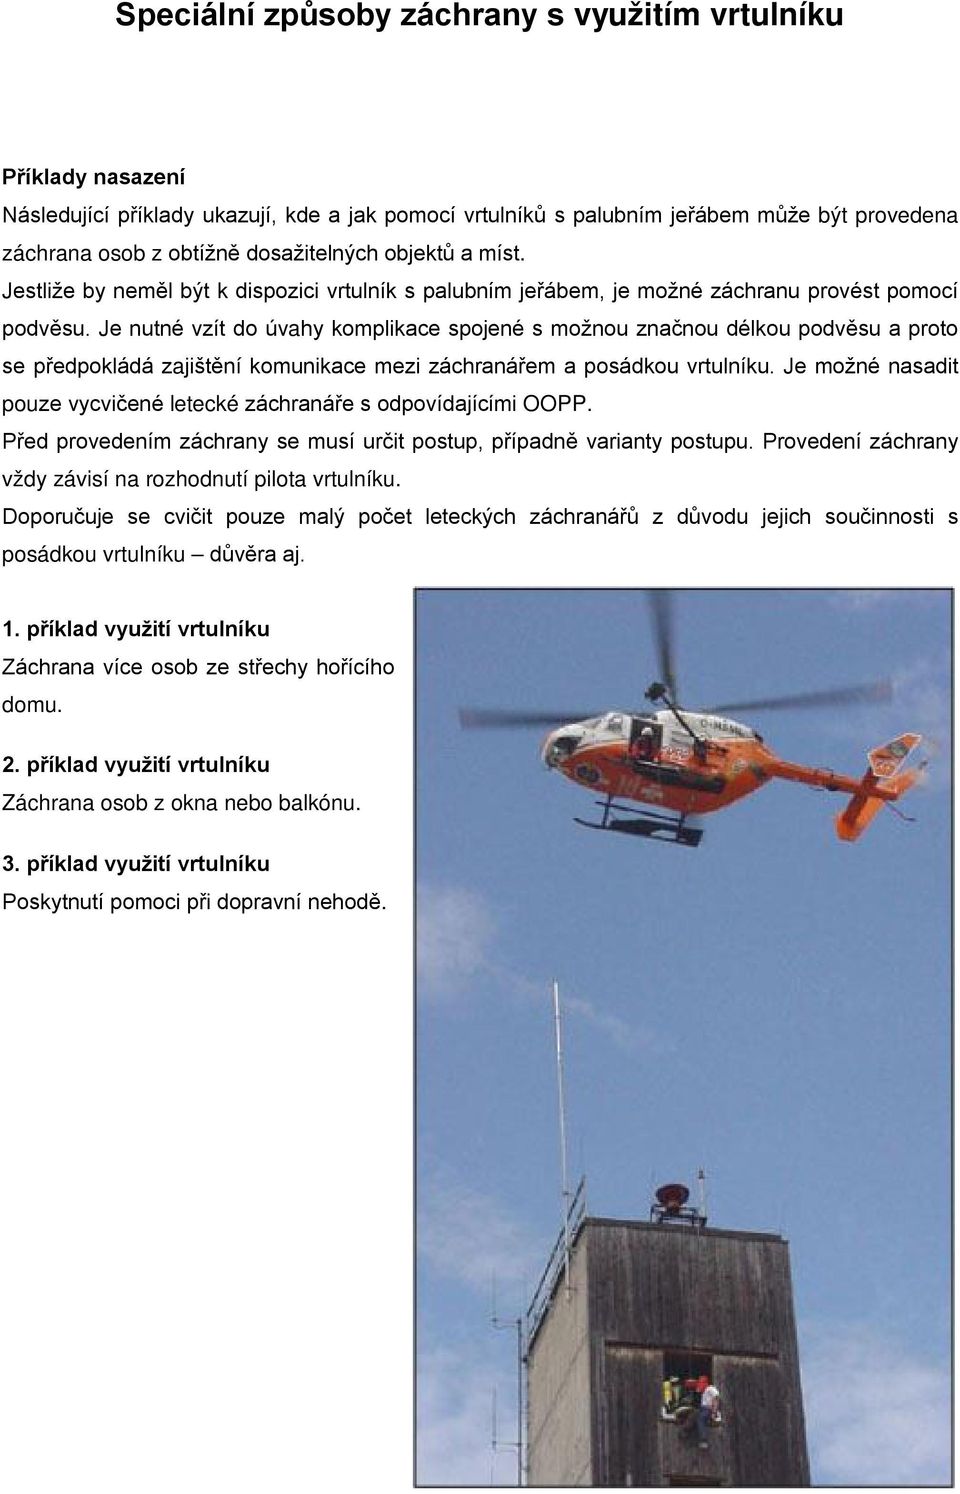 Je nutné vzít do úvahy komplikace spojené s možnou značnou délkou podvěsu a proto se předpokládá zajištění komunikace mezi záchranářem a posádkou vrtulníku.